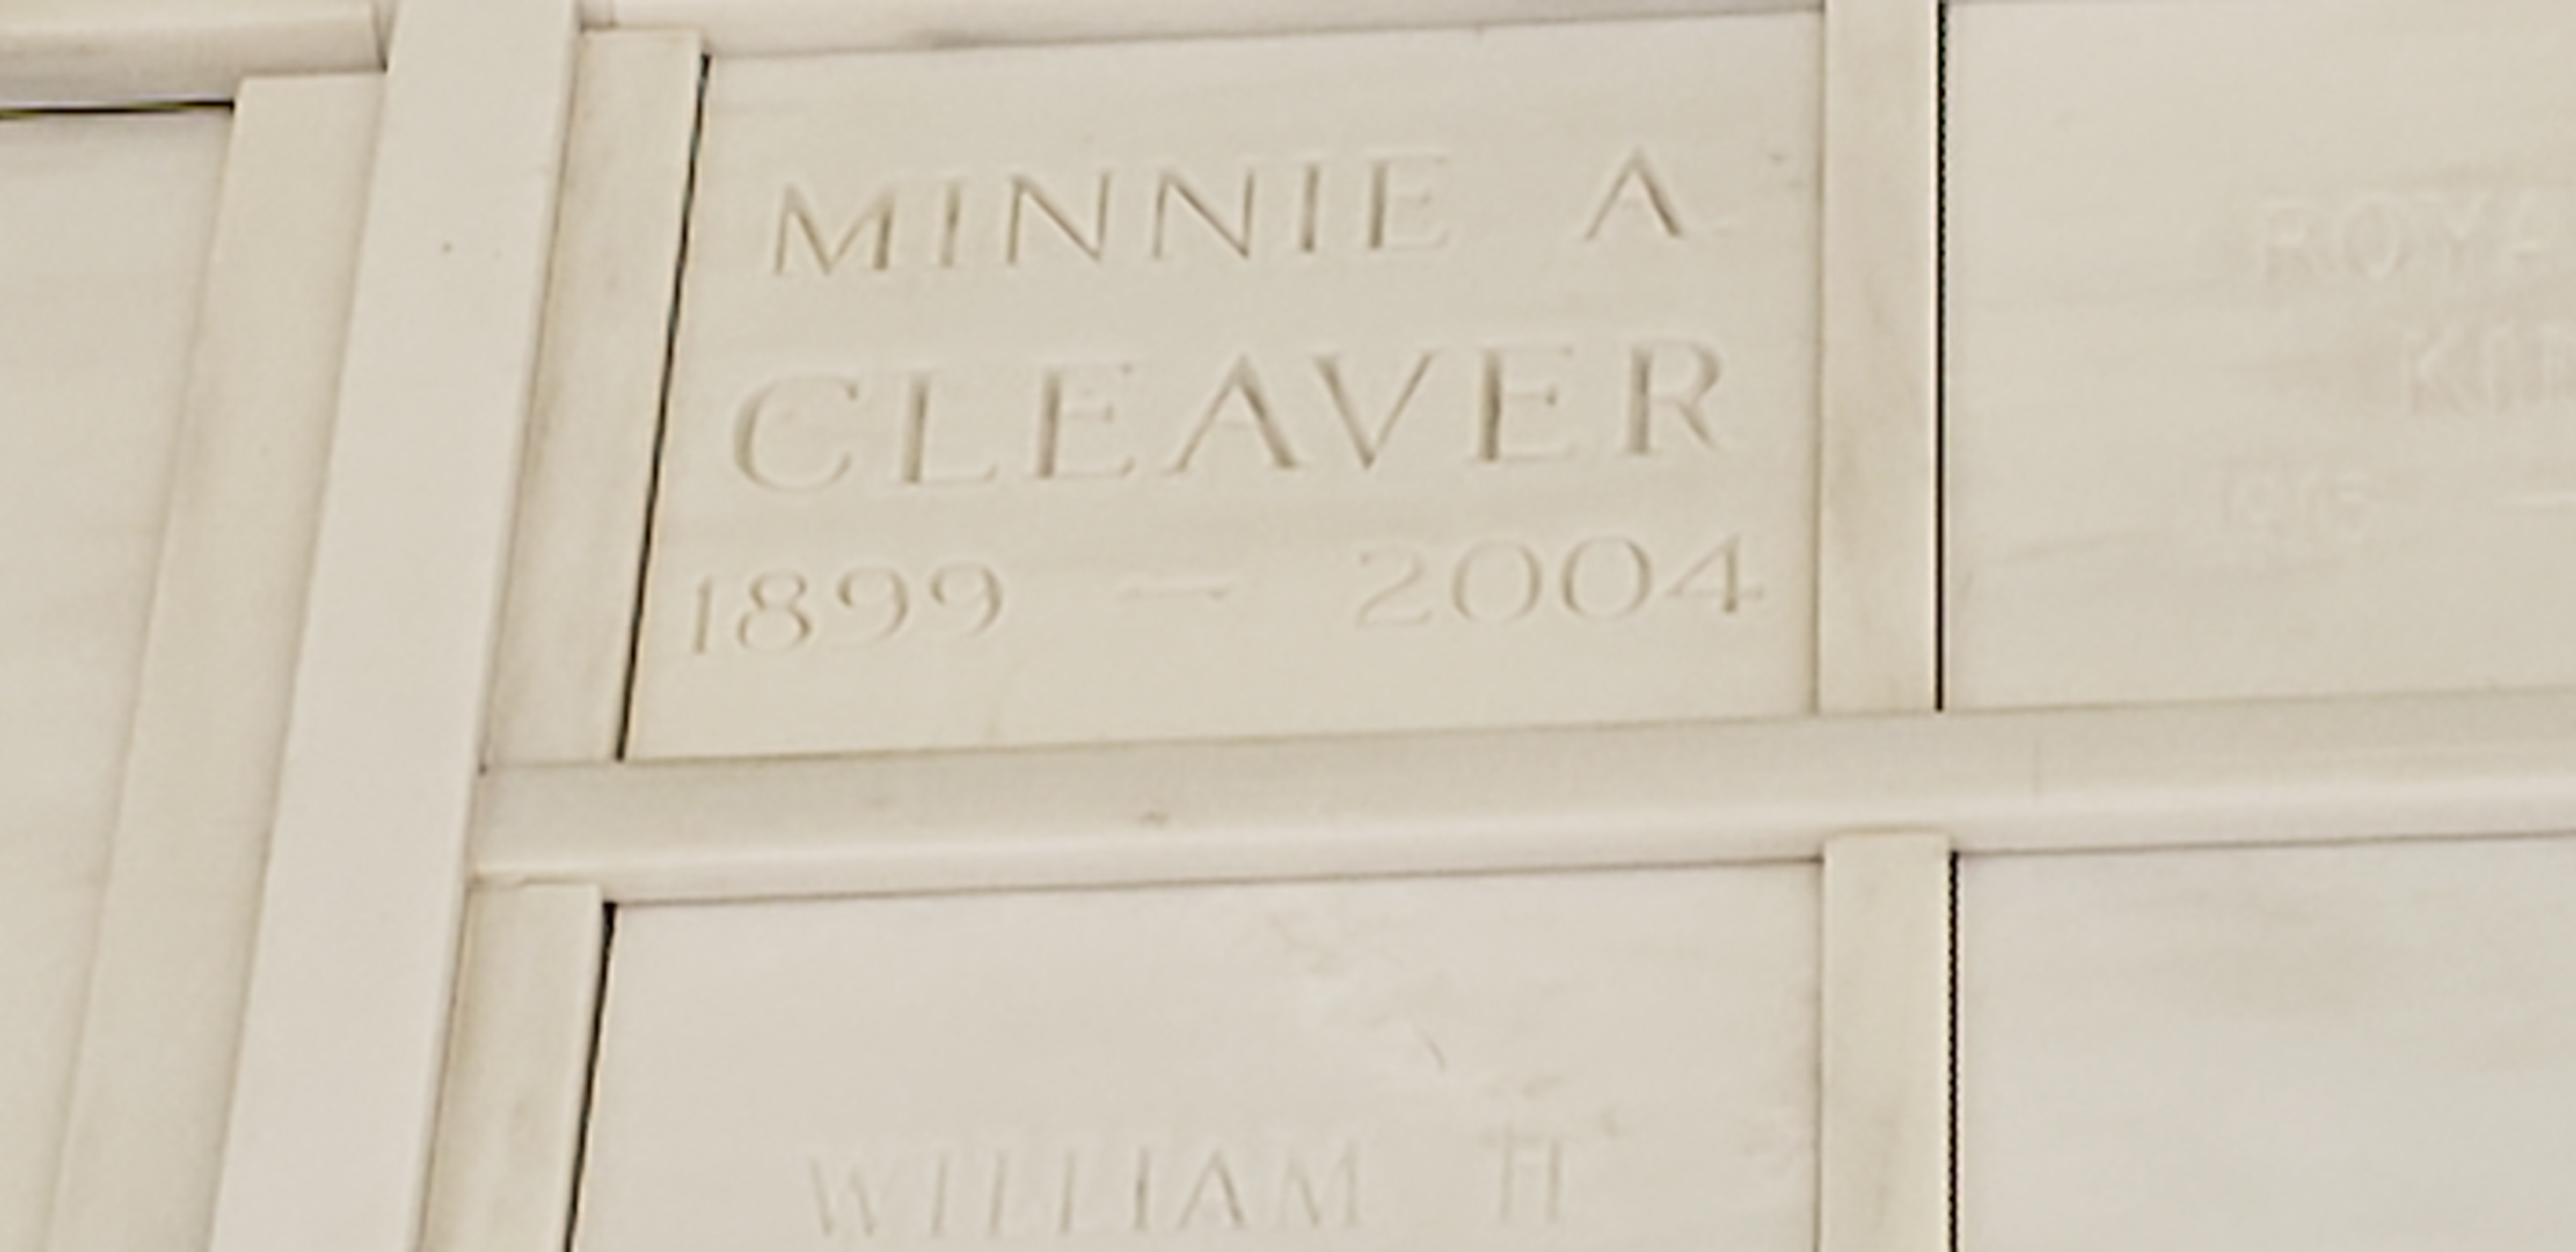 Minnie A Cleaver